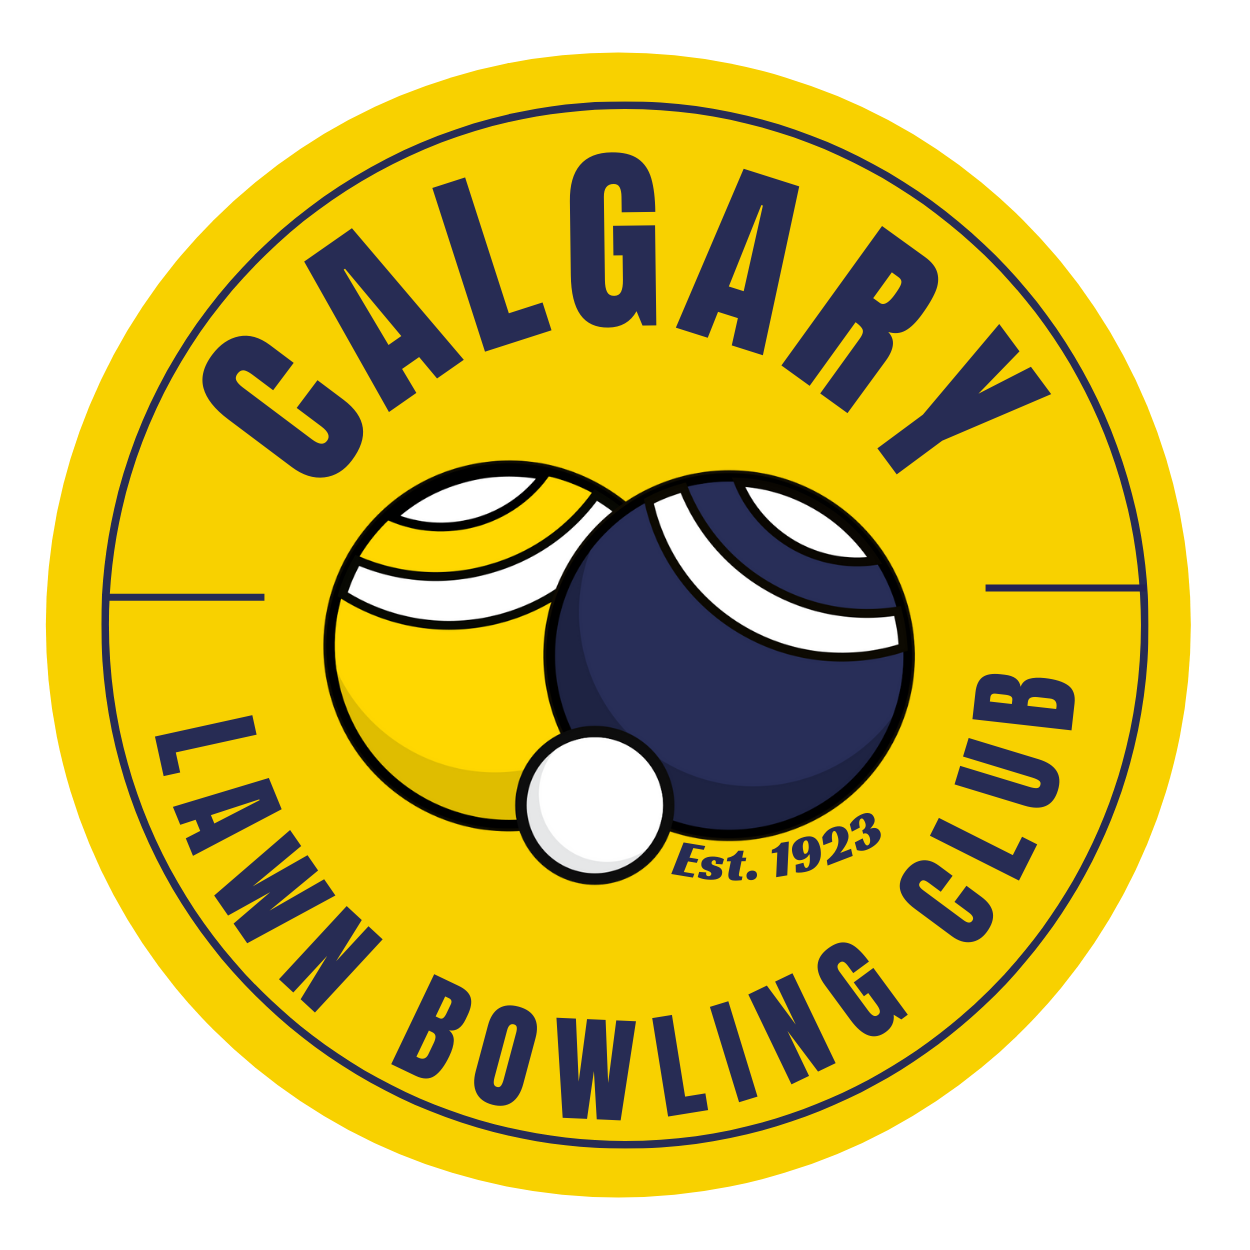 Calgary Lawn Bowling Club